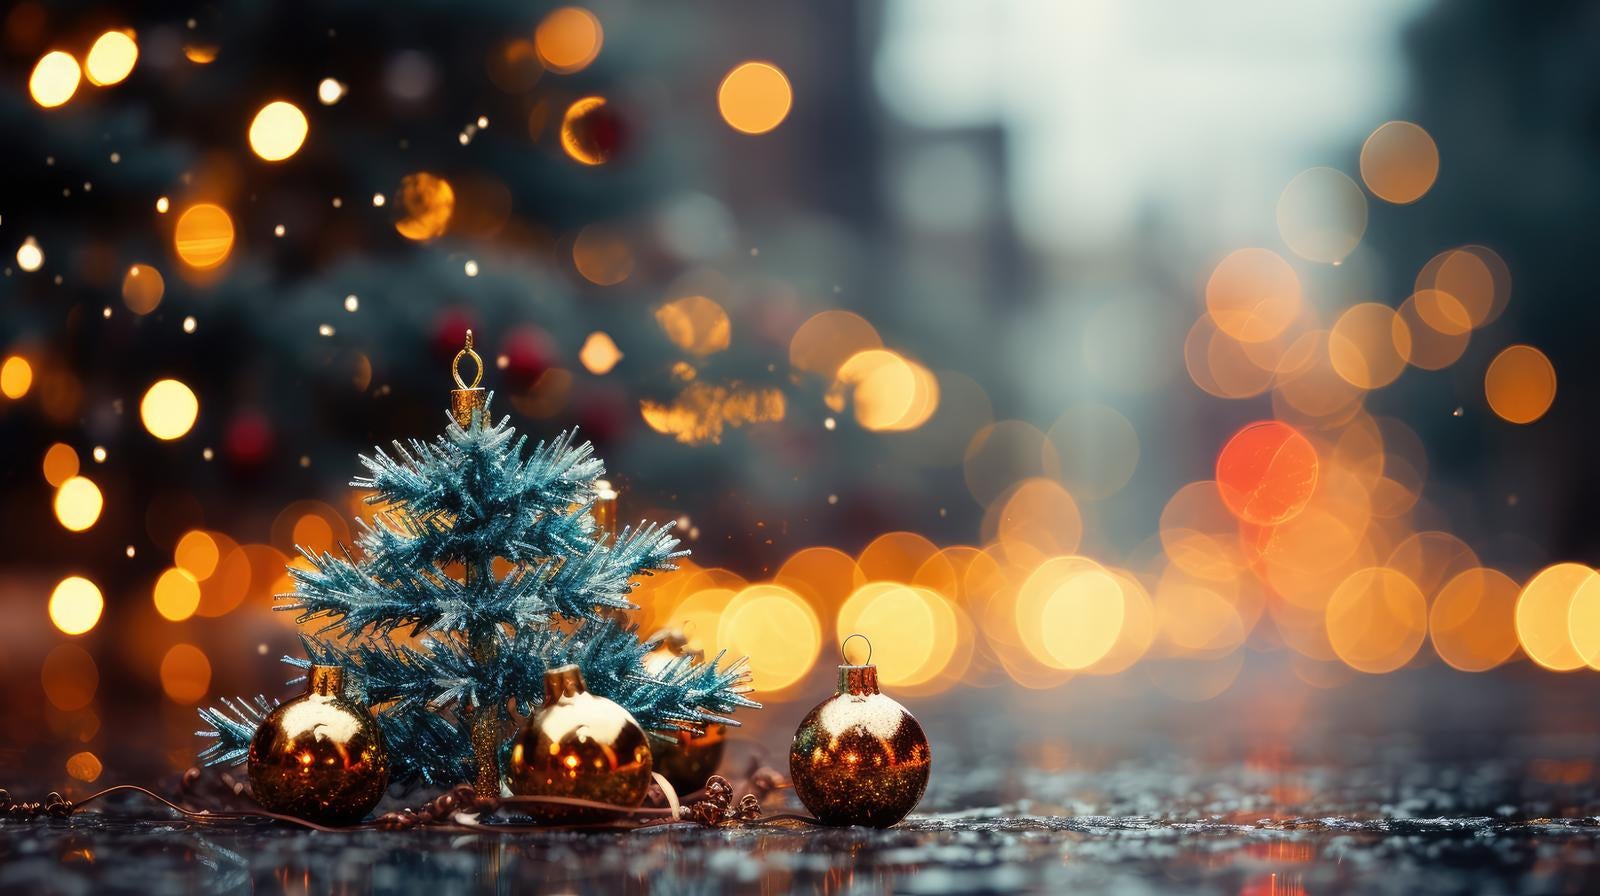 「おもちゃのクリスマスツリーを輝かせるイルミネーションとオーナメント」の写真